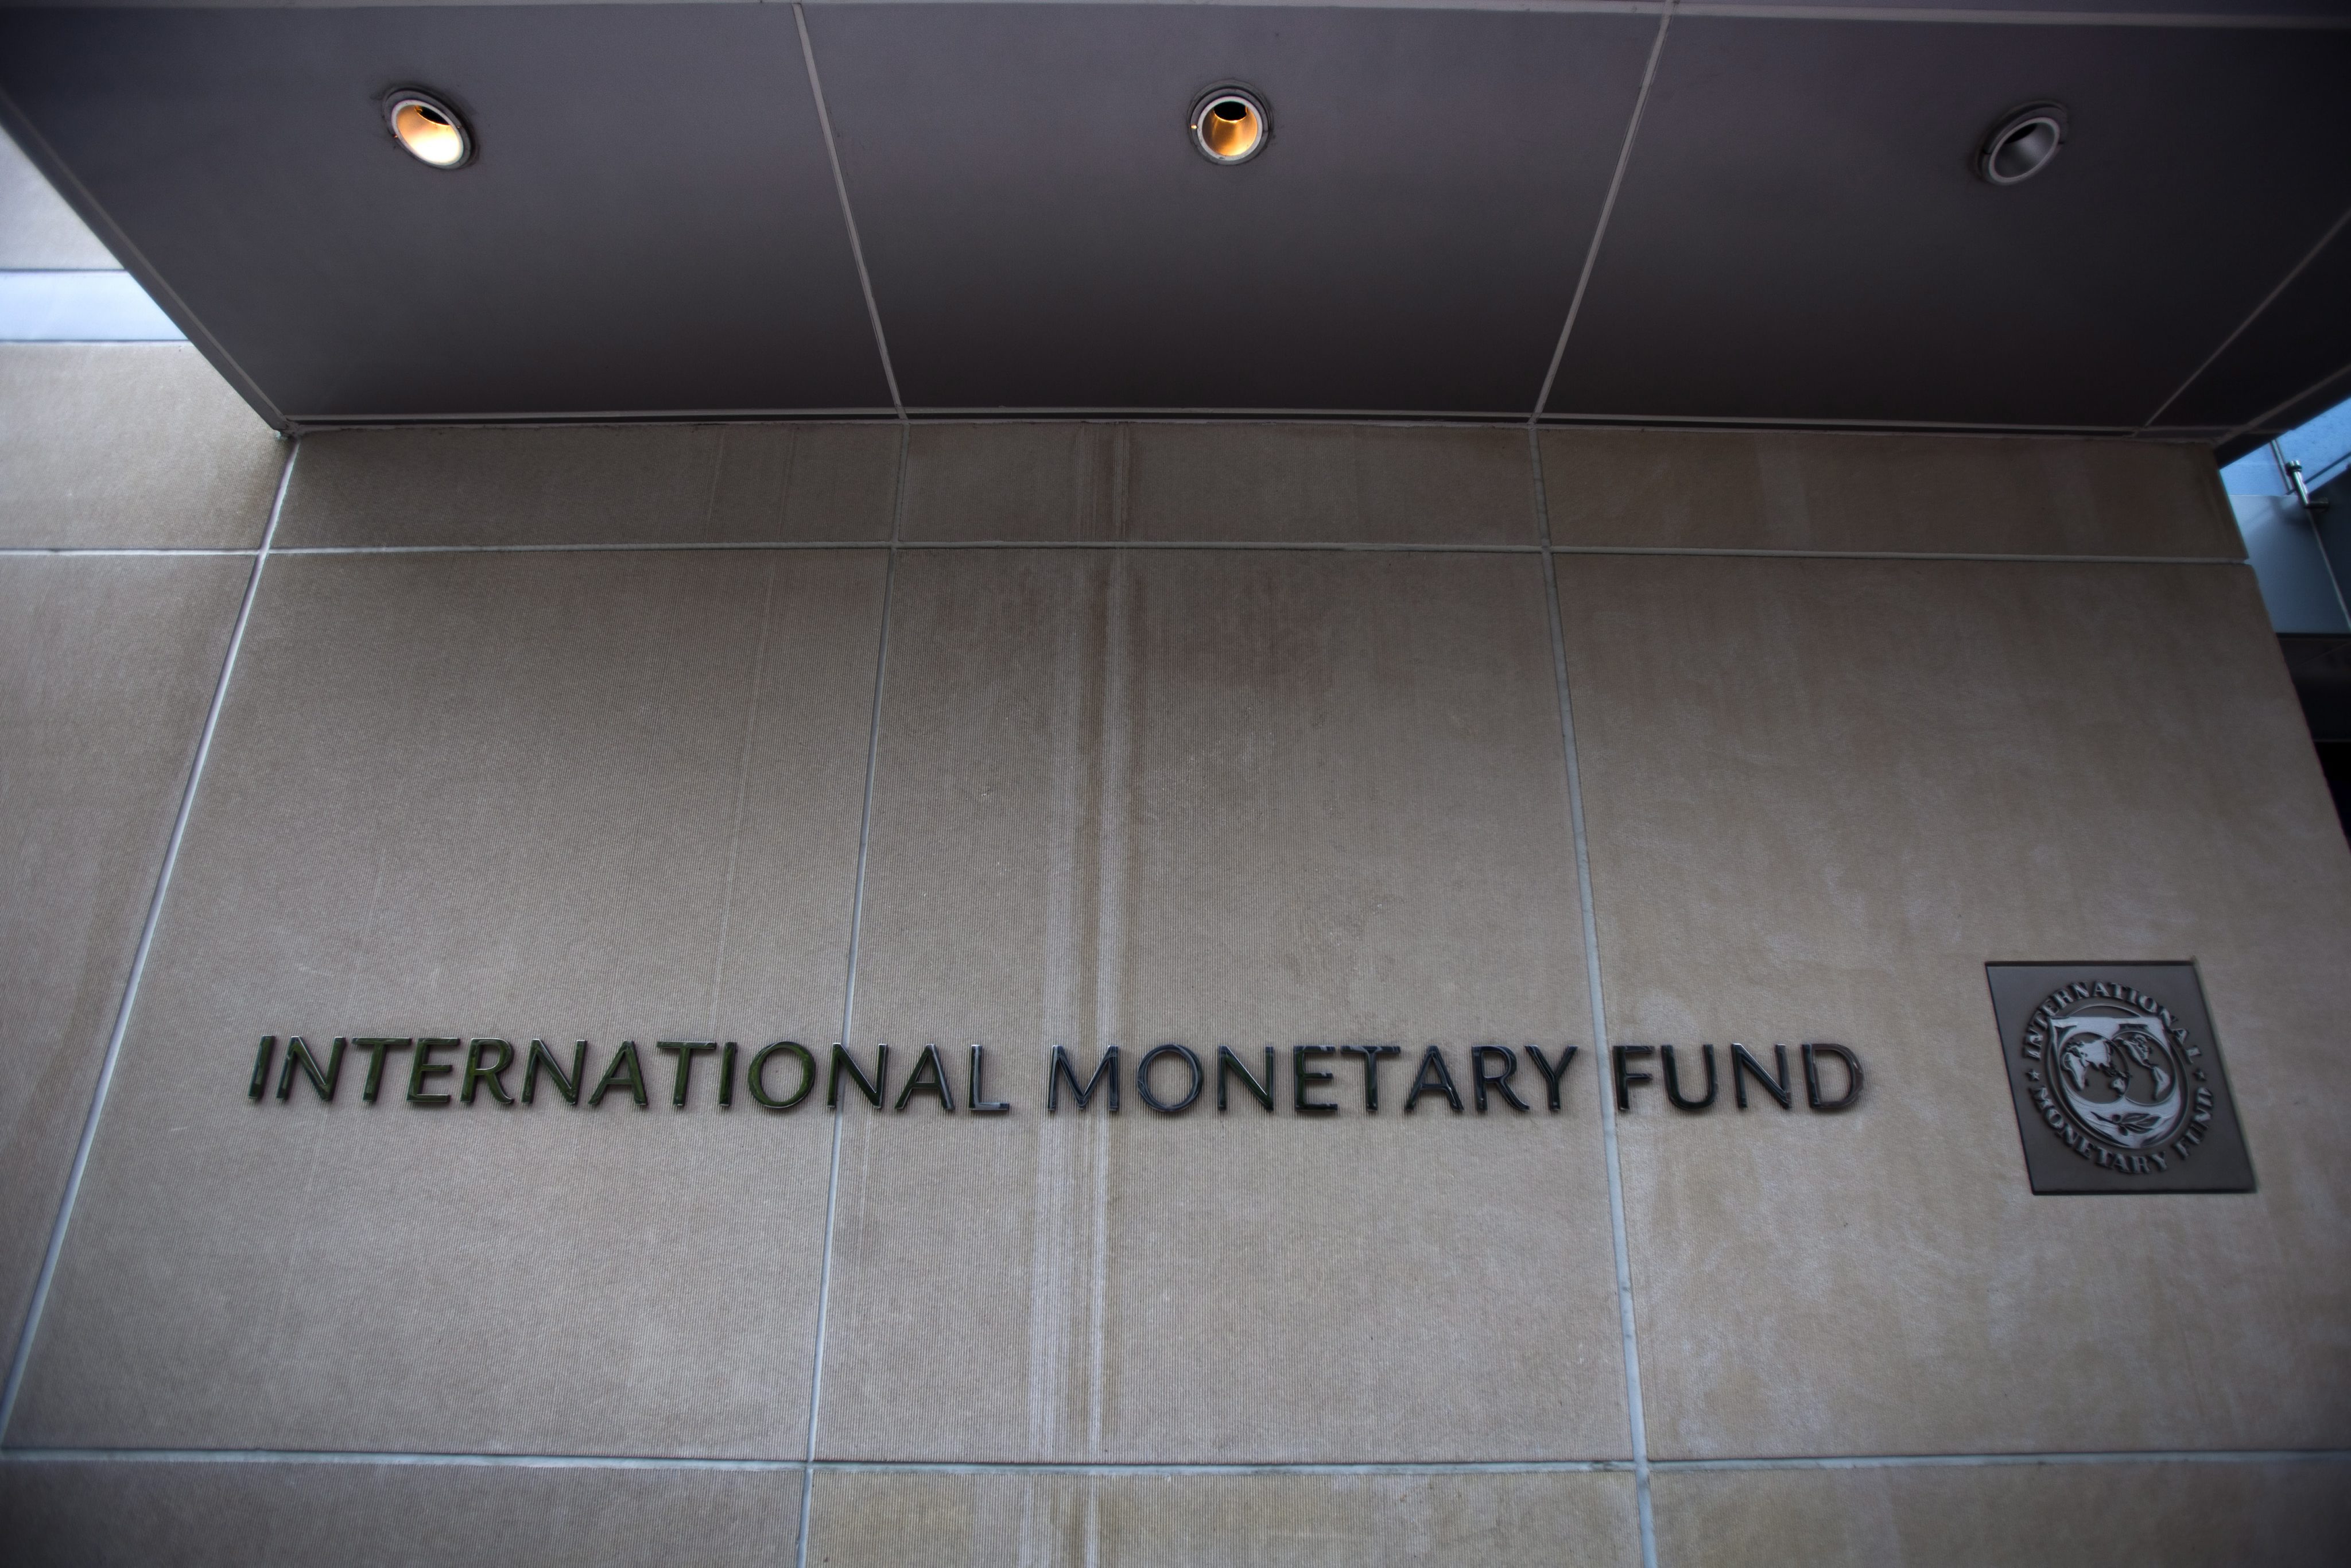 Στην εαρινή σύνοδο του ΔΝΤ στρέφονται πλέον τα βλέμματα